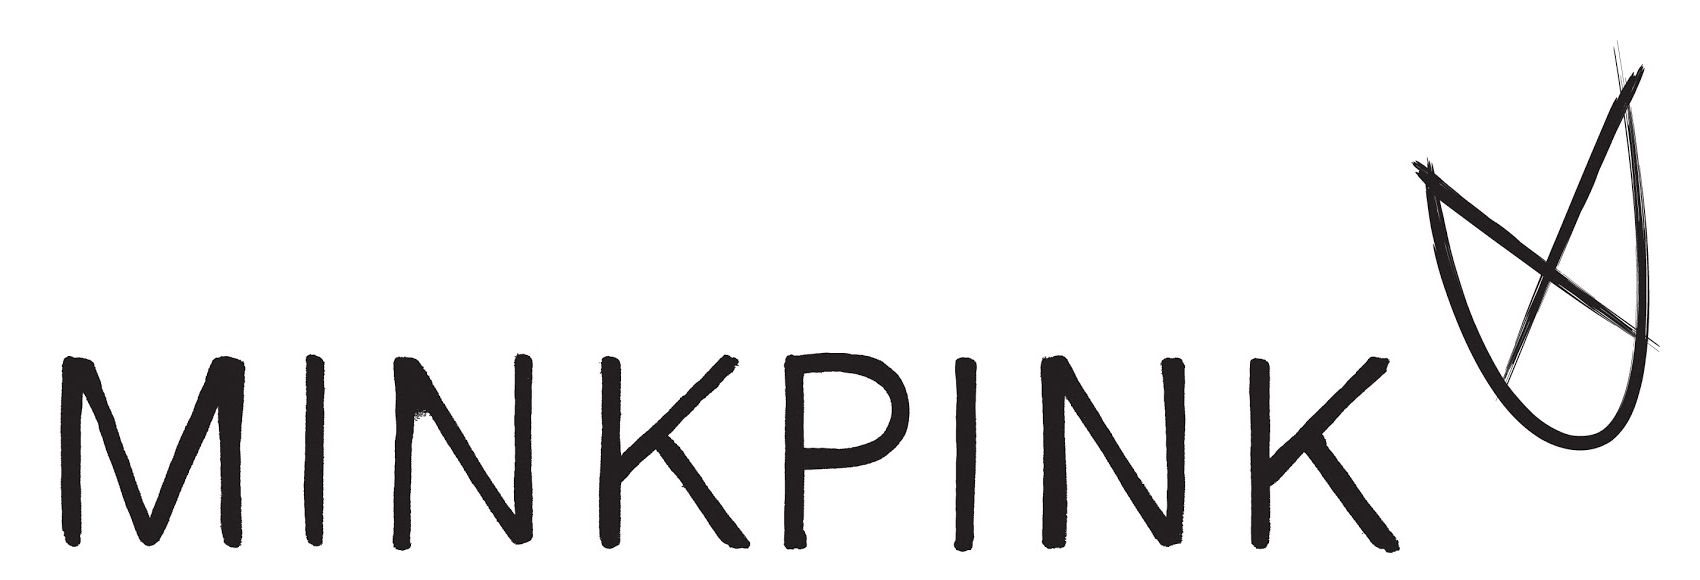 Minkpink_logo_logotype.png